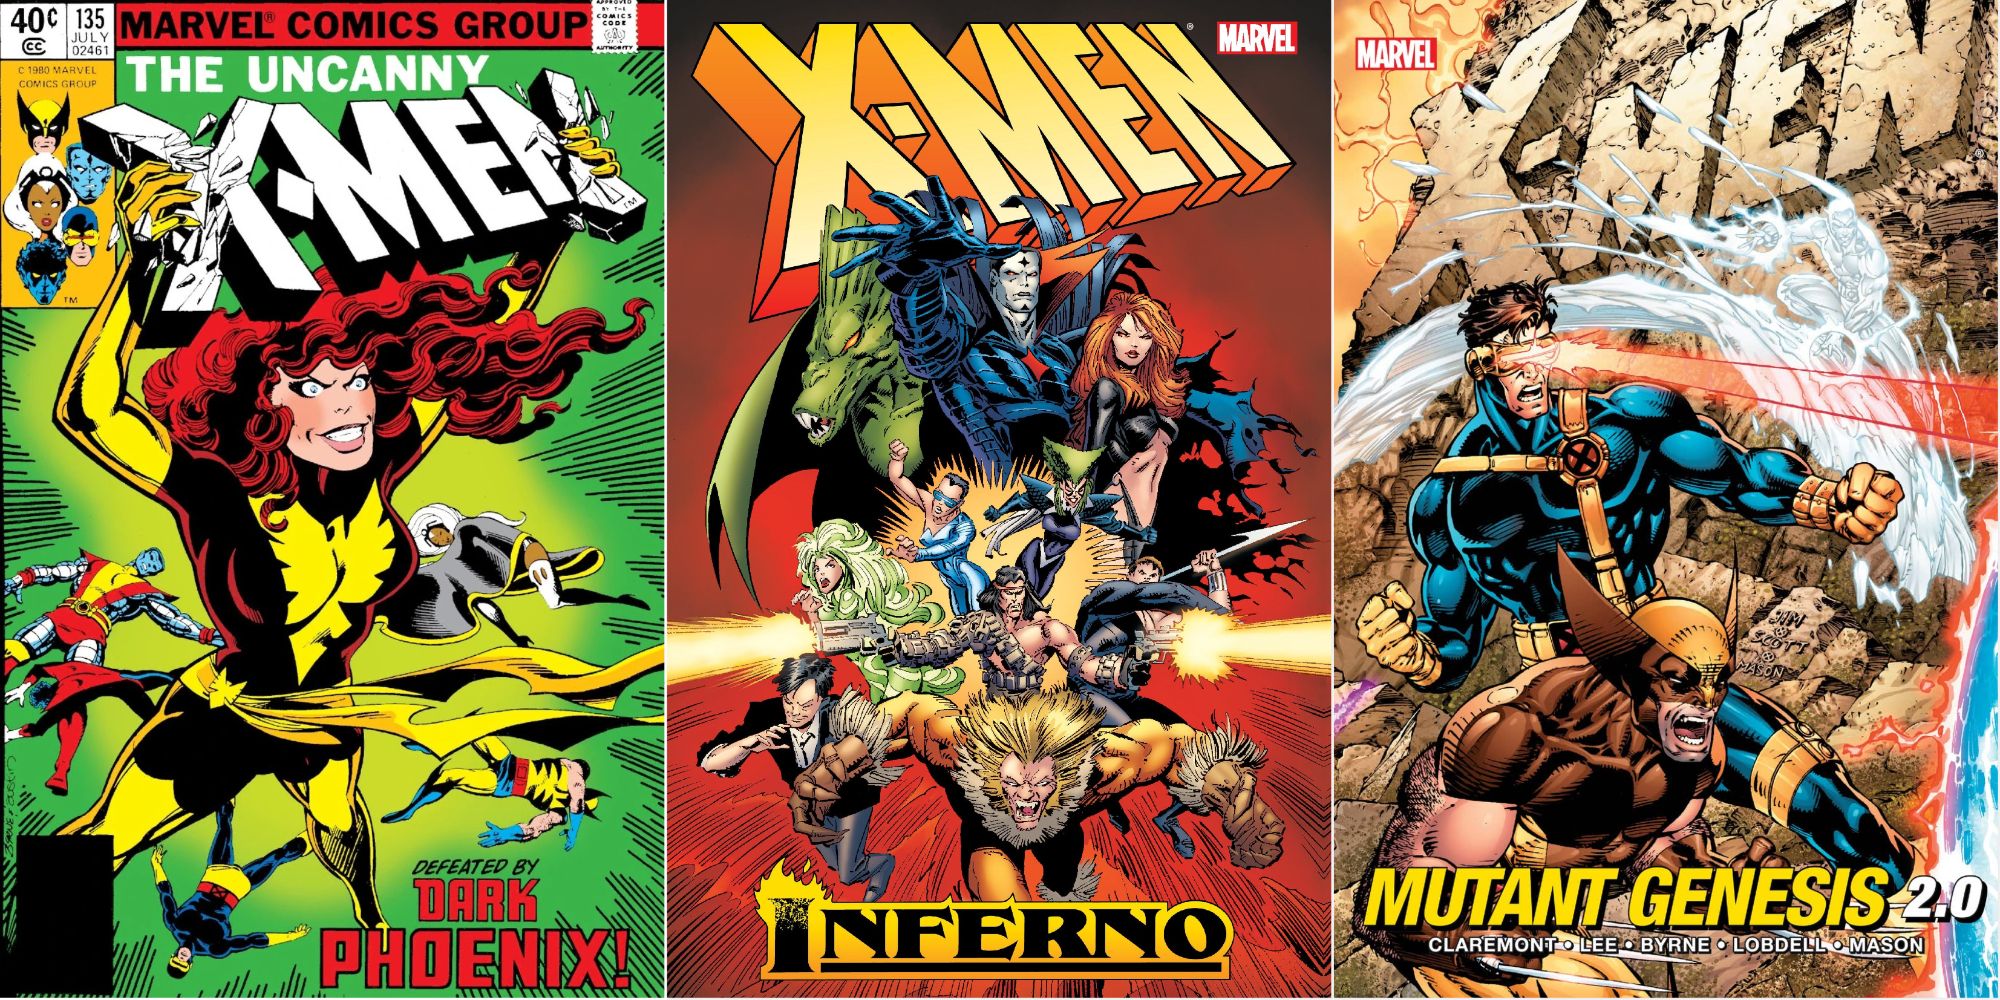 Dark Phoenix Saga, Inferno, and Mutant Genesis